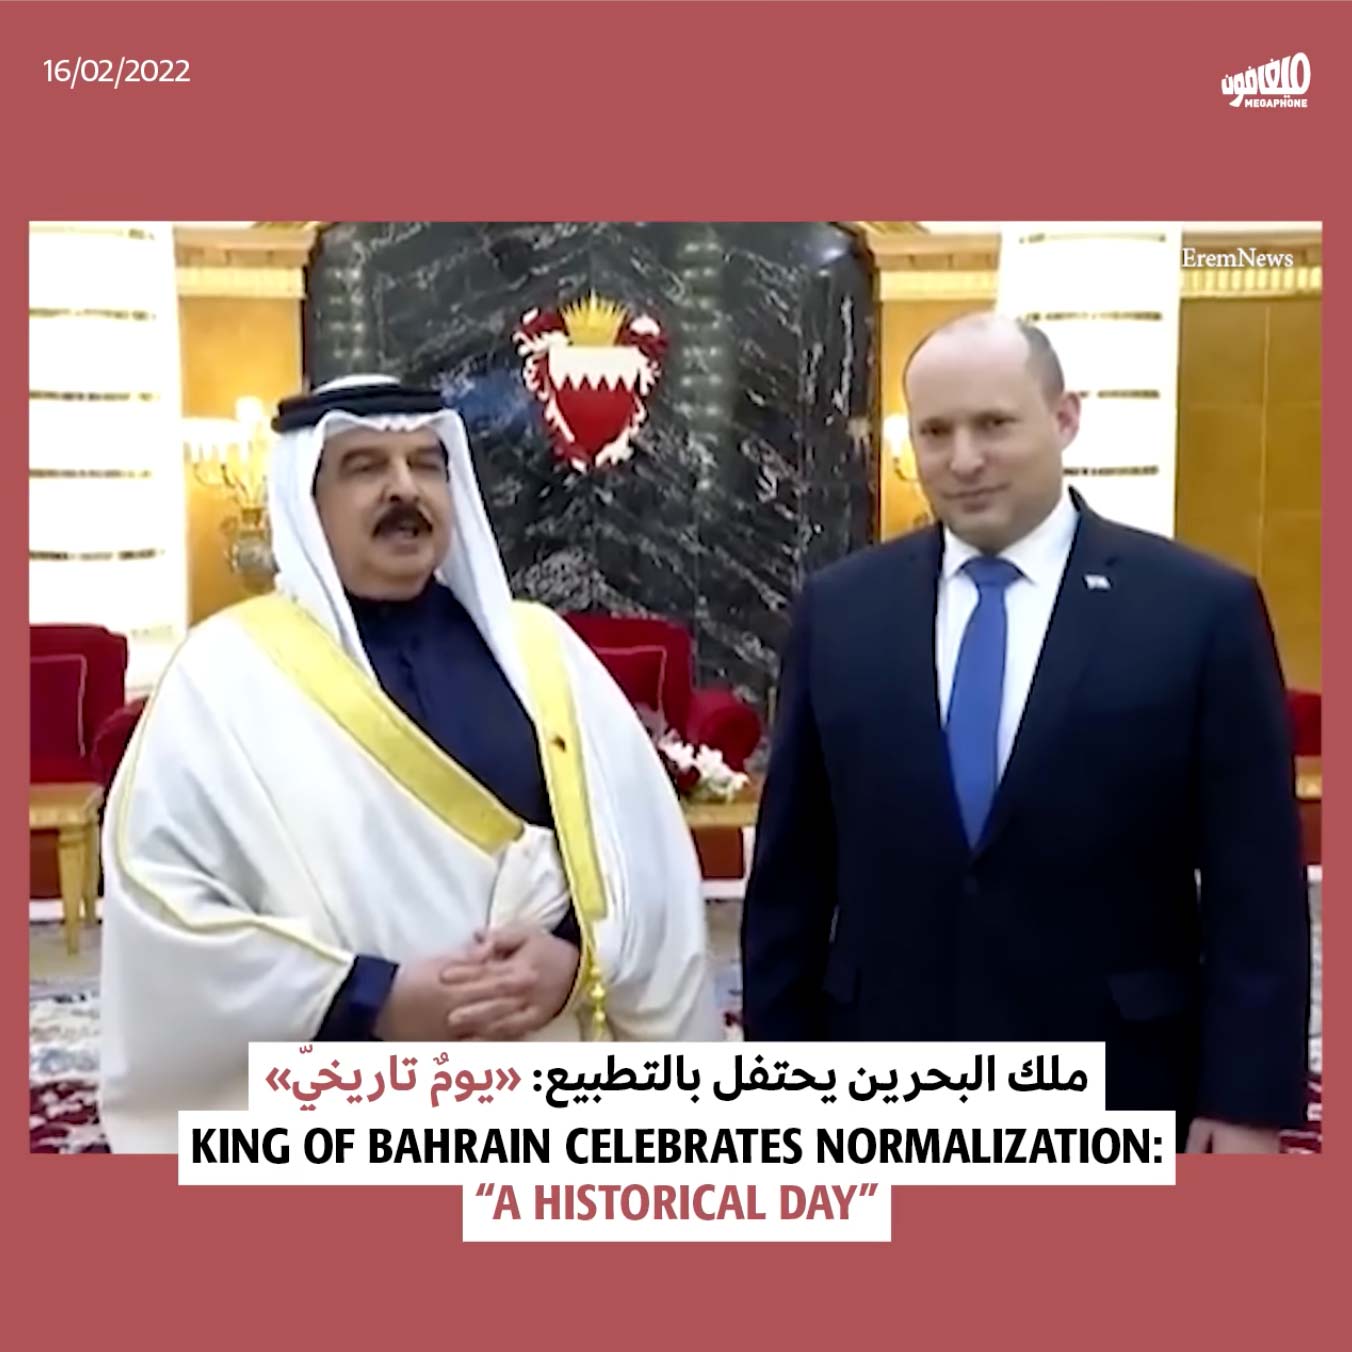 ملك البحرين يحتفل بالتطبيع: «يومٌ تاريخيّ»